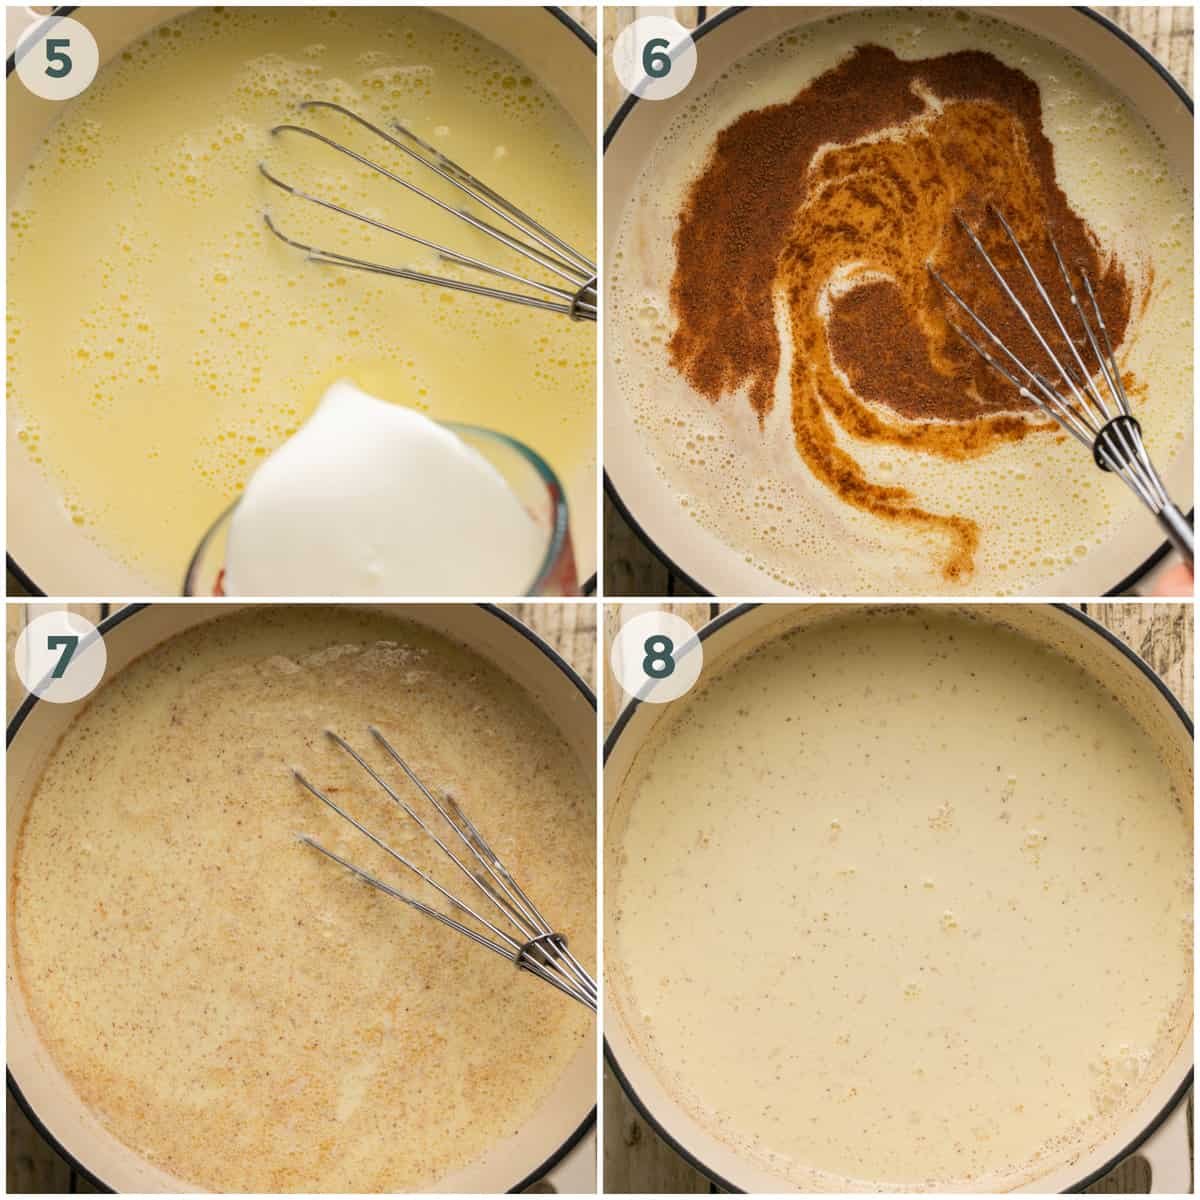 steps 5-8 of eggnog recipe